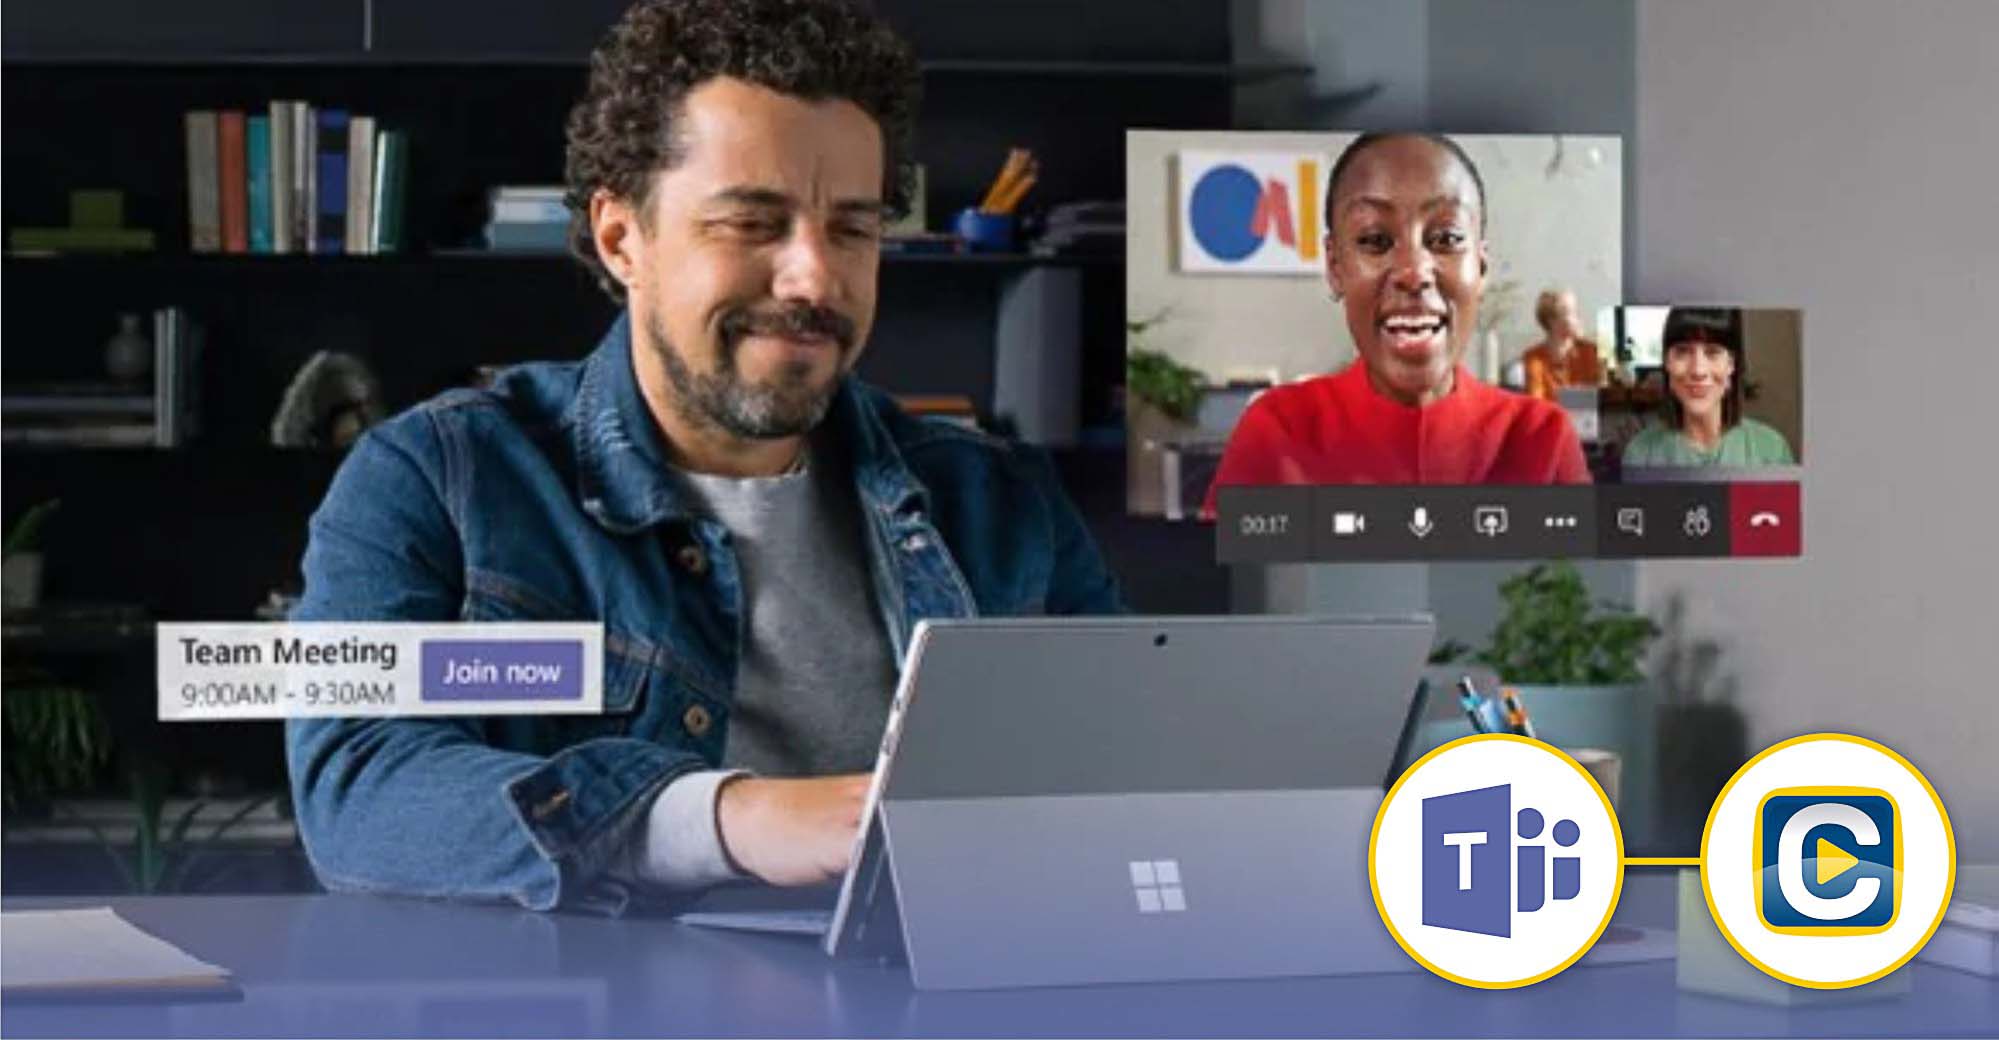 Faculdade Salesiana lança plataforma de ensino virtual em parceria com a Microsoft